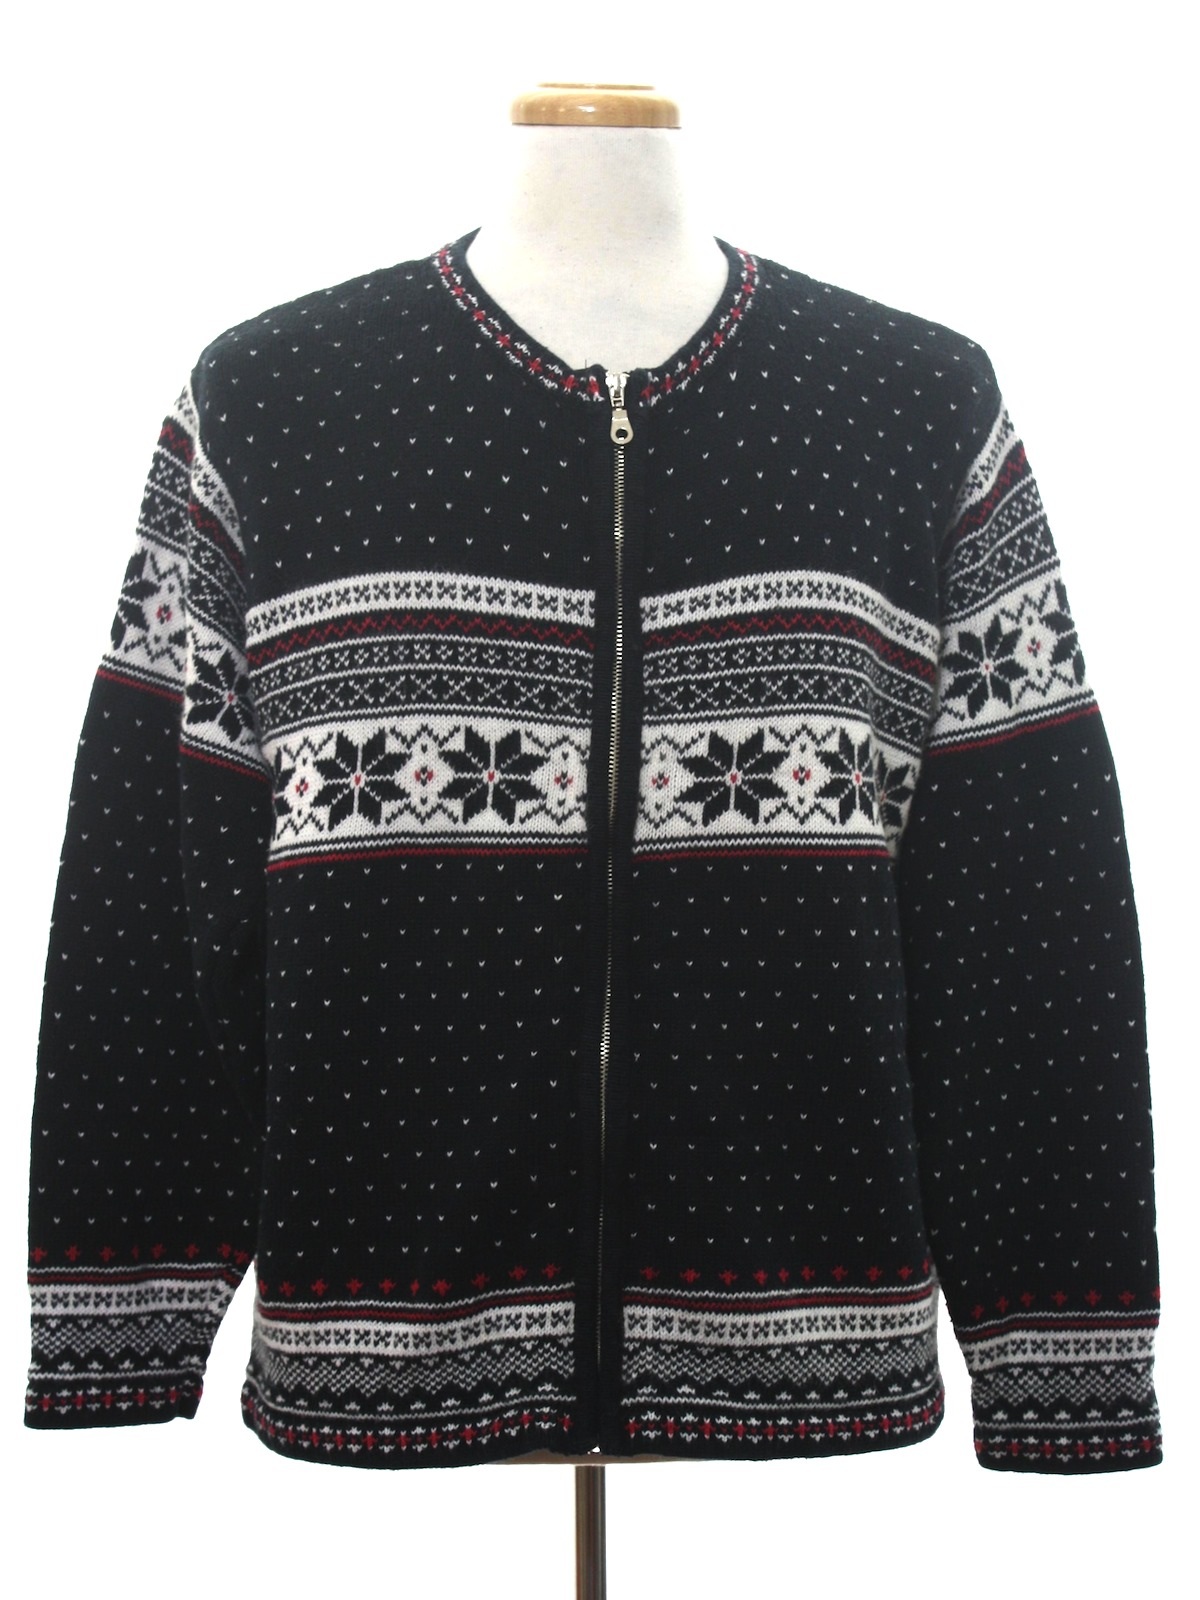 Snowflake Ugly Christmas Sweater: -Parisian- Unisex black background ...